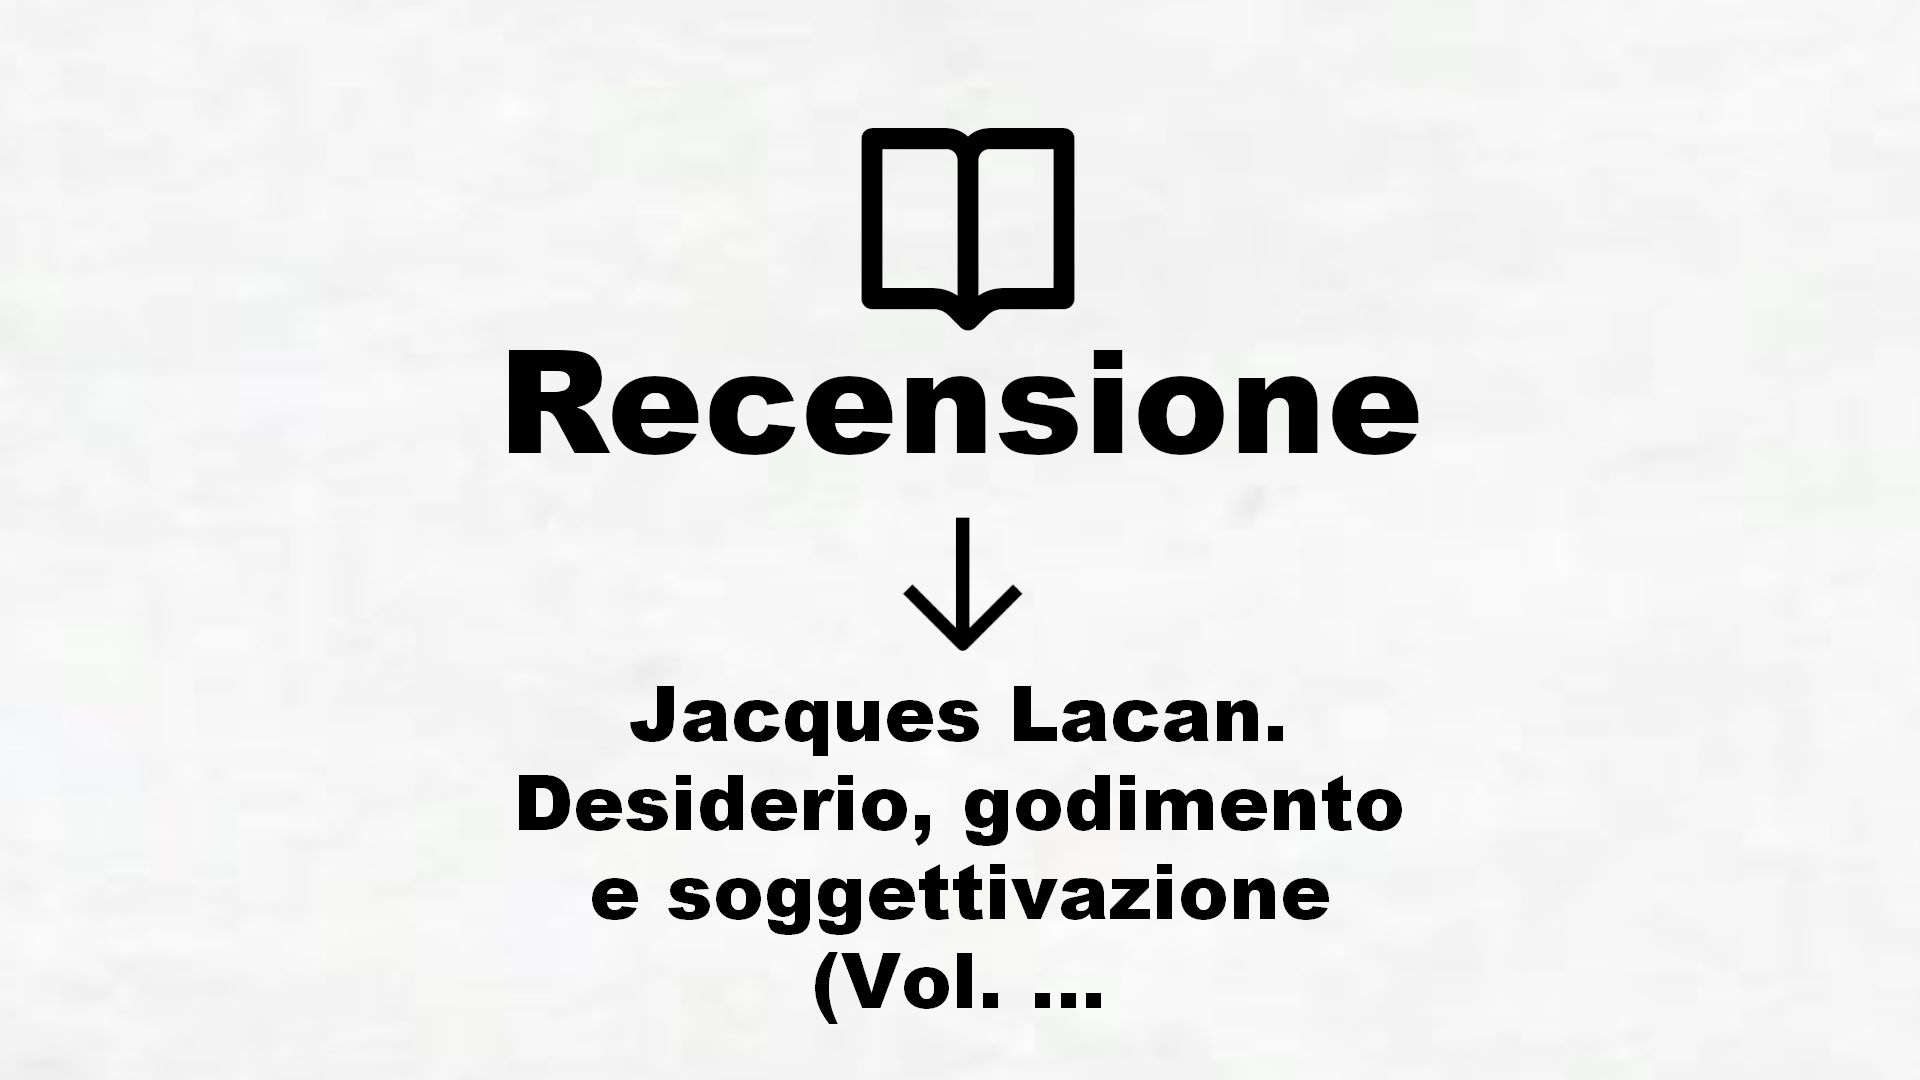 Jacques Lacan. Desiderio, godimento e soggettivazione (Vol. 1) – Recensione Libro